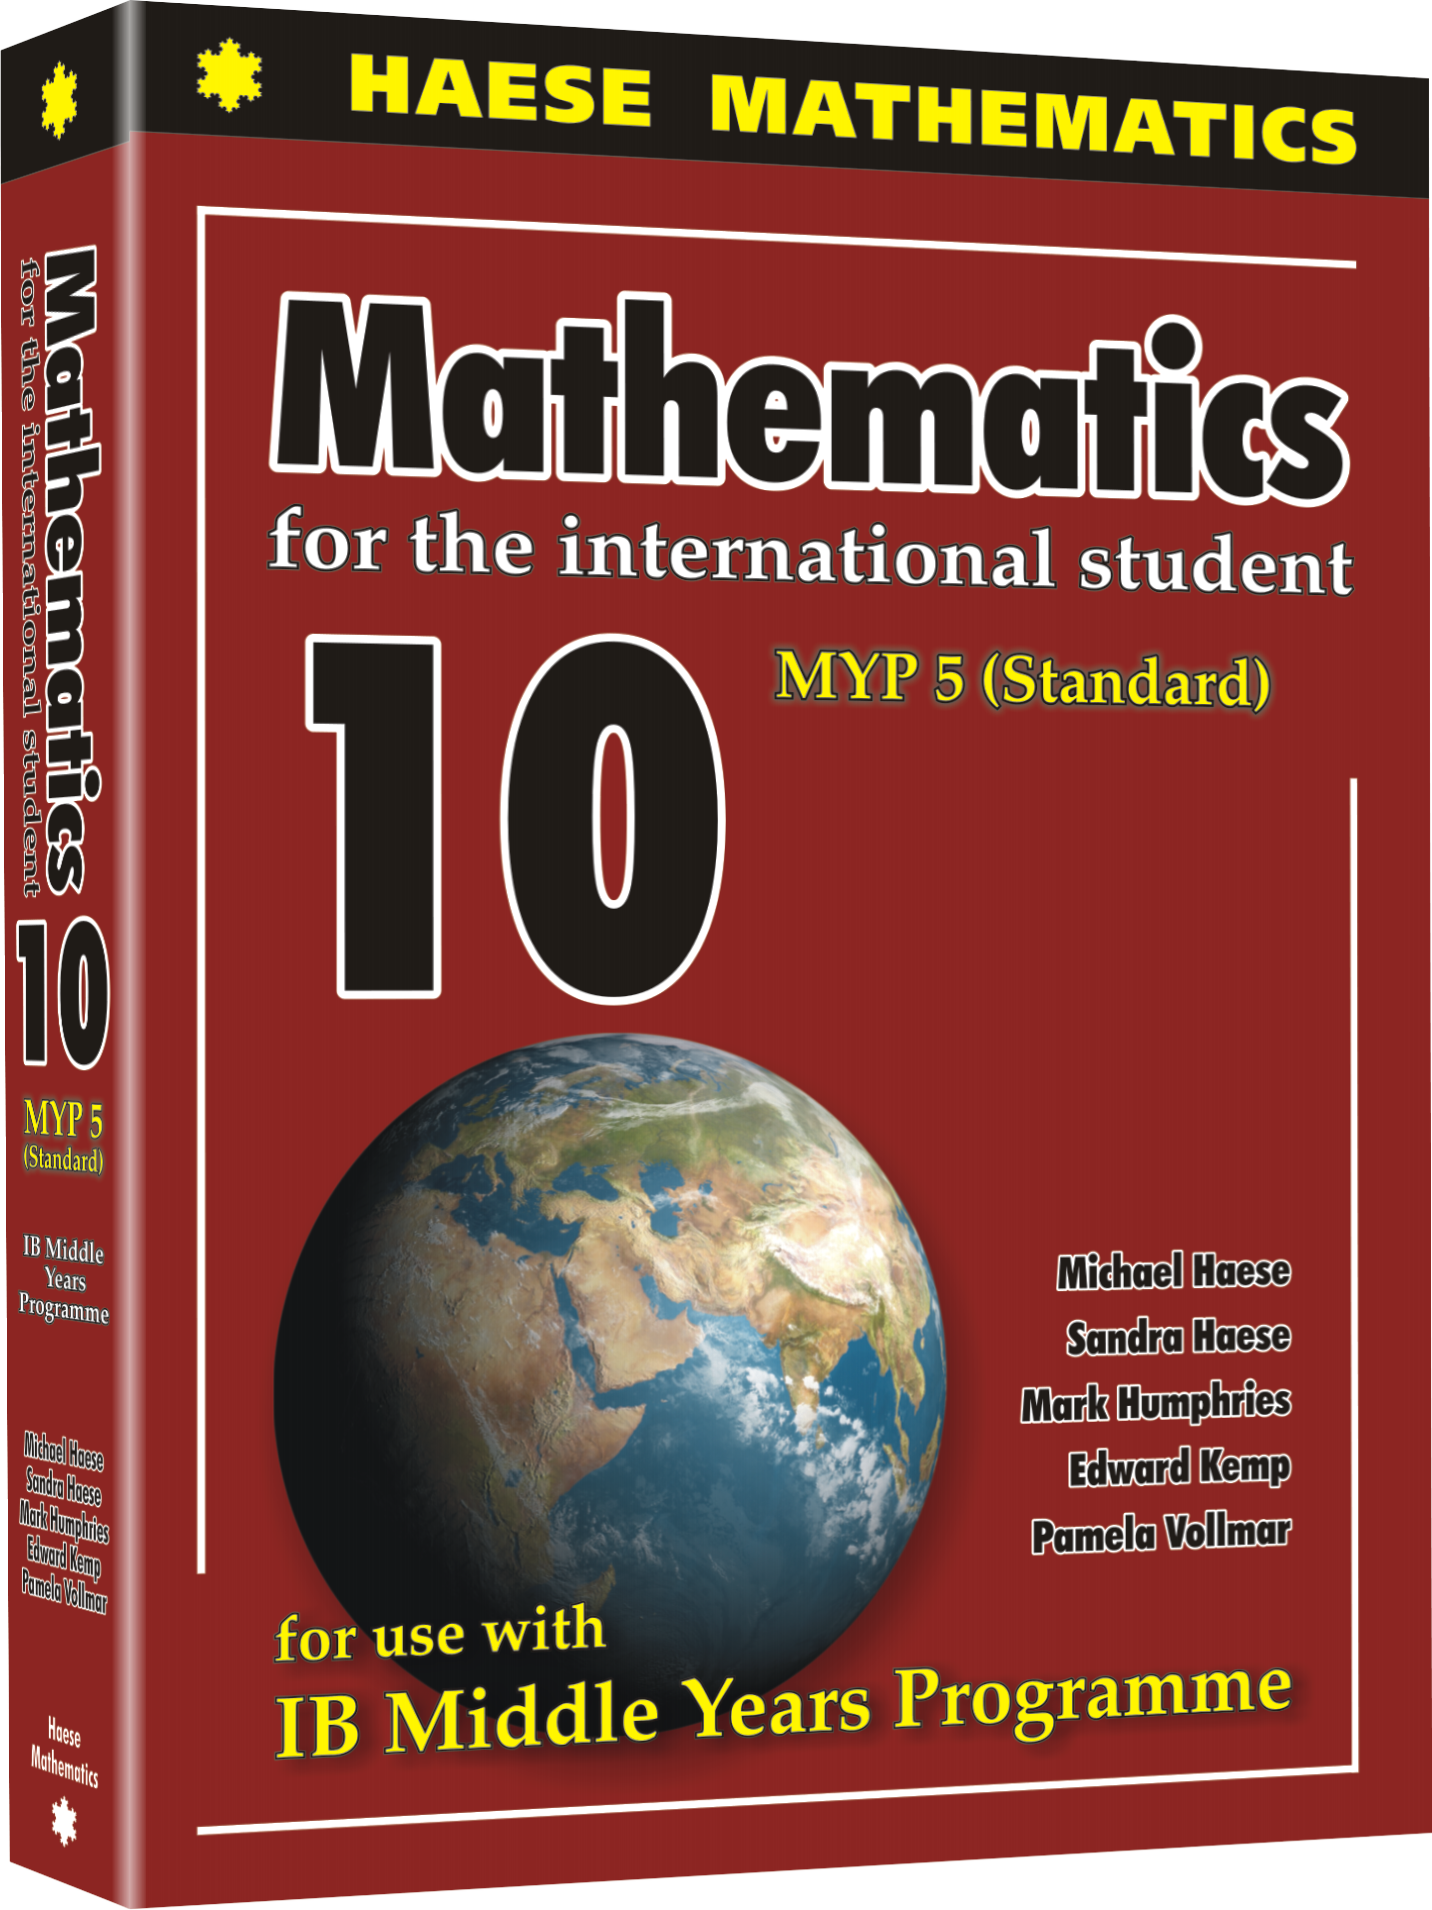 Haese mathematics year 10 pdf free download sadp software download